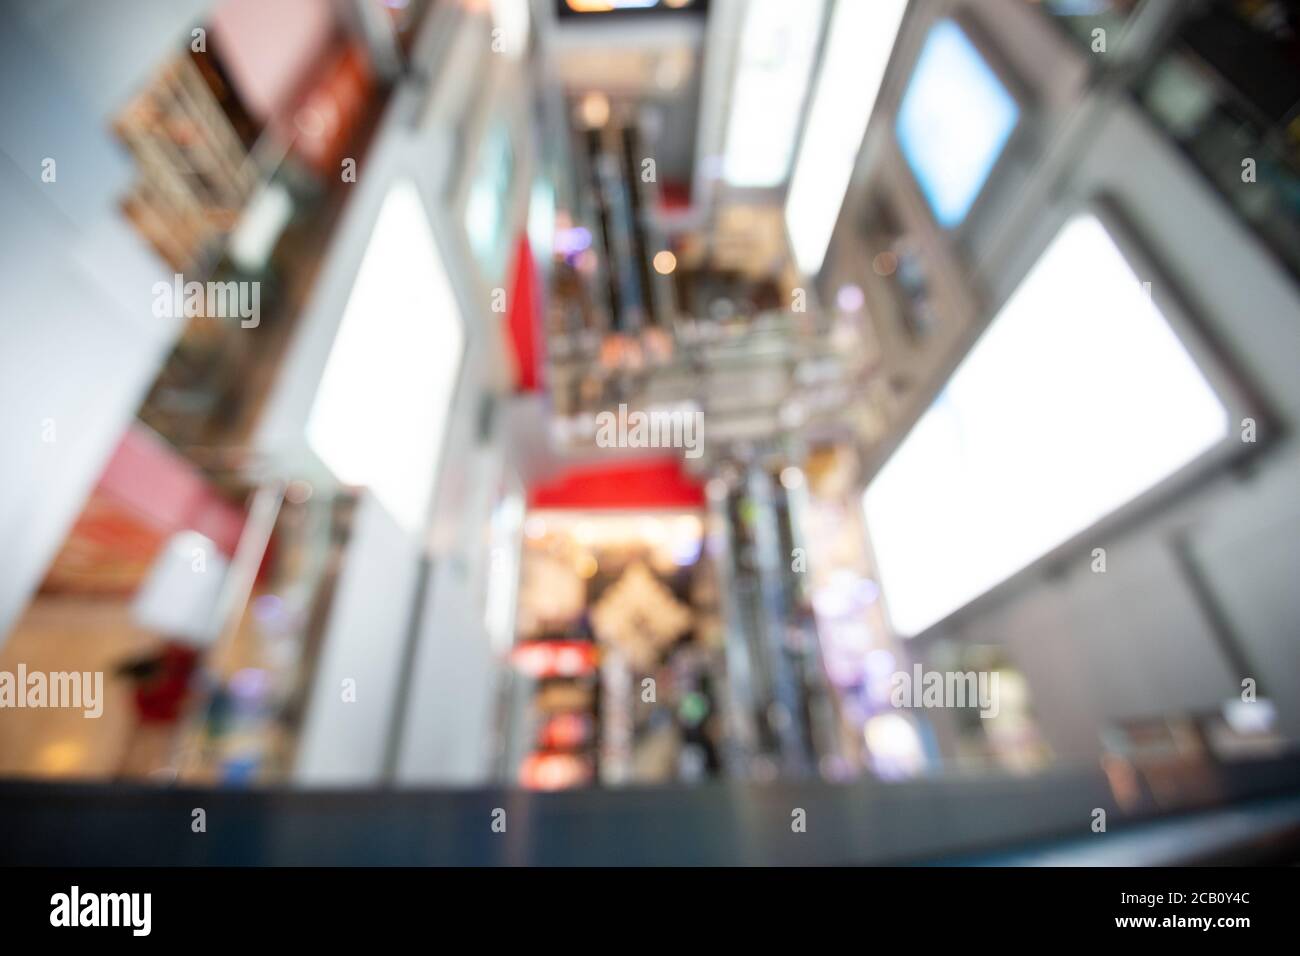 Abstrakt verwischen Lichter im Ladengeschäft Mall Hintergrund. Interieur sauber Supermarkt Lifestyle-Konzept für City-Shop Plakatwand, Verbraucher Weg modernen Markt Stockfoto